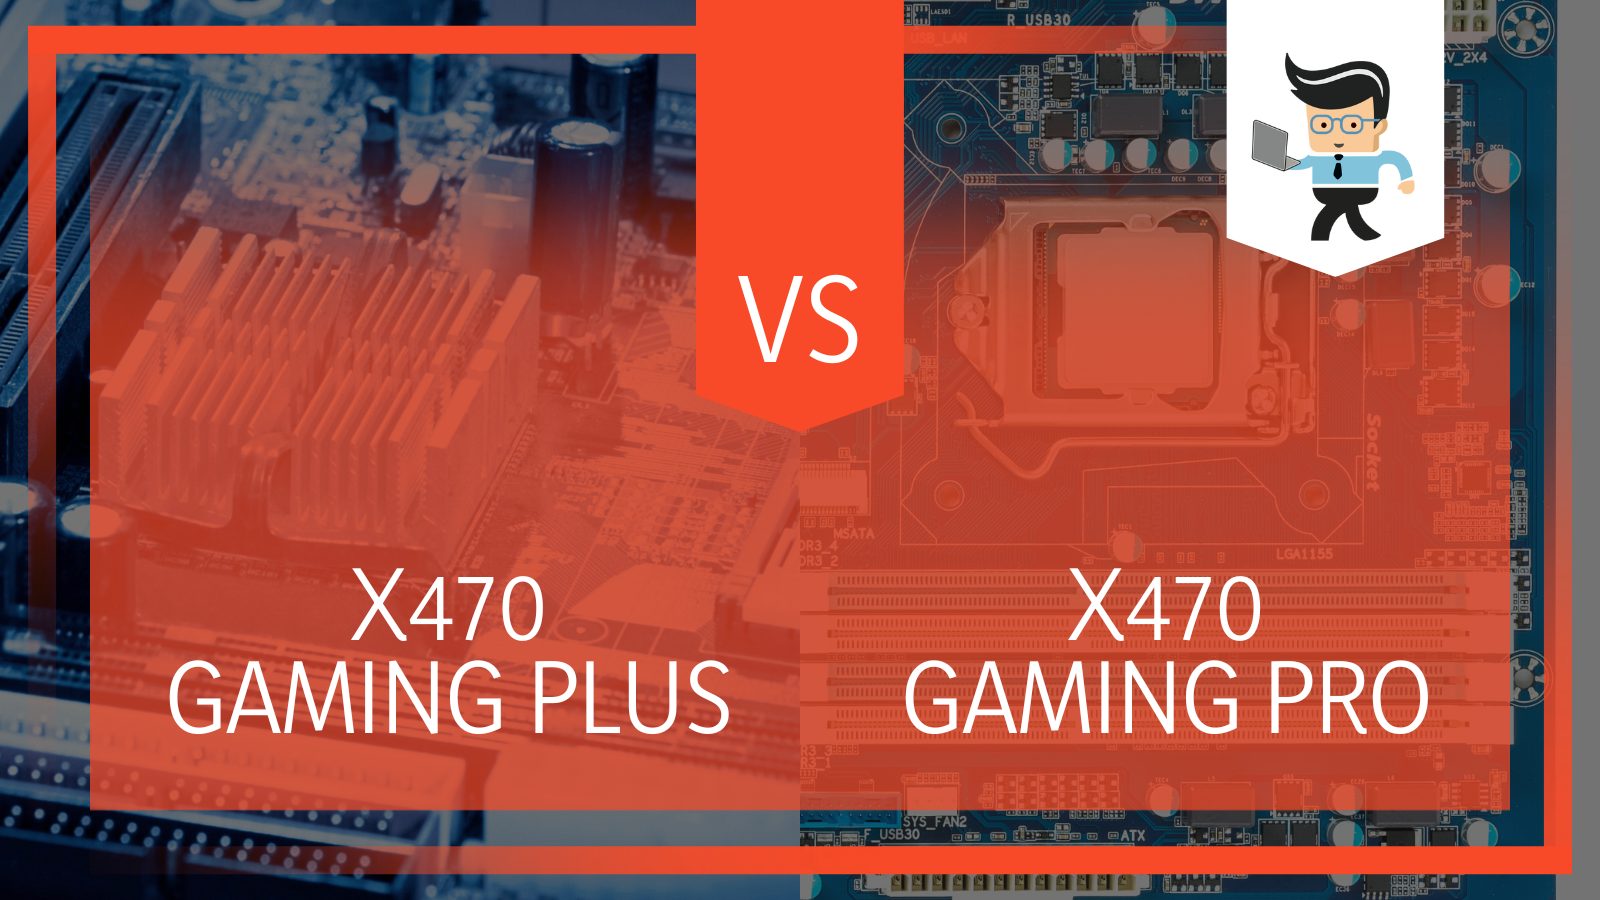 Msi X470 Gaming Plus vs Pro Debate